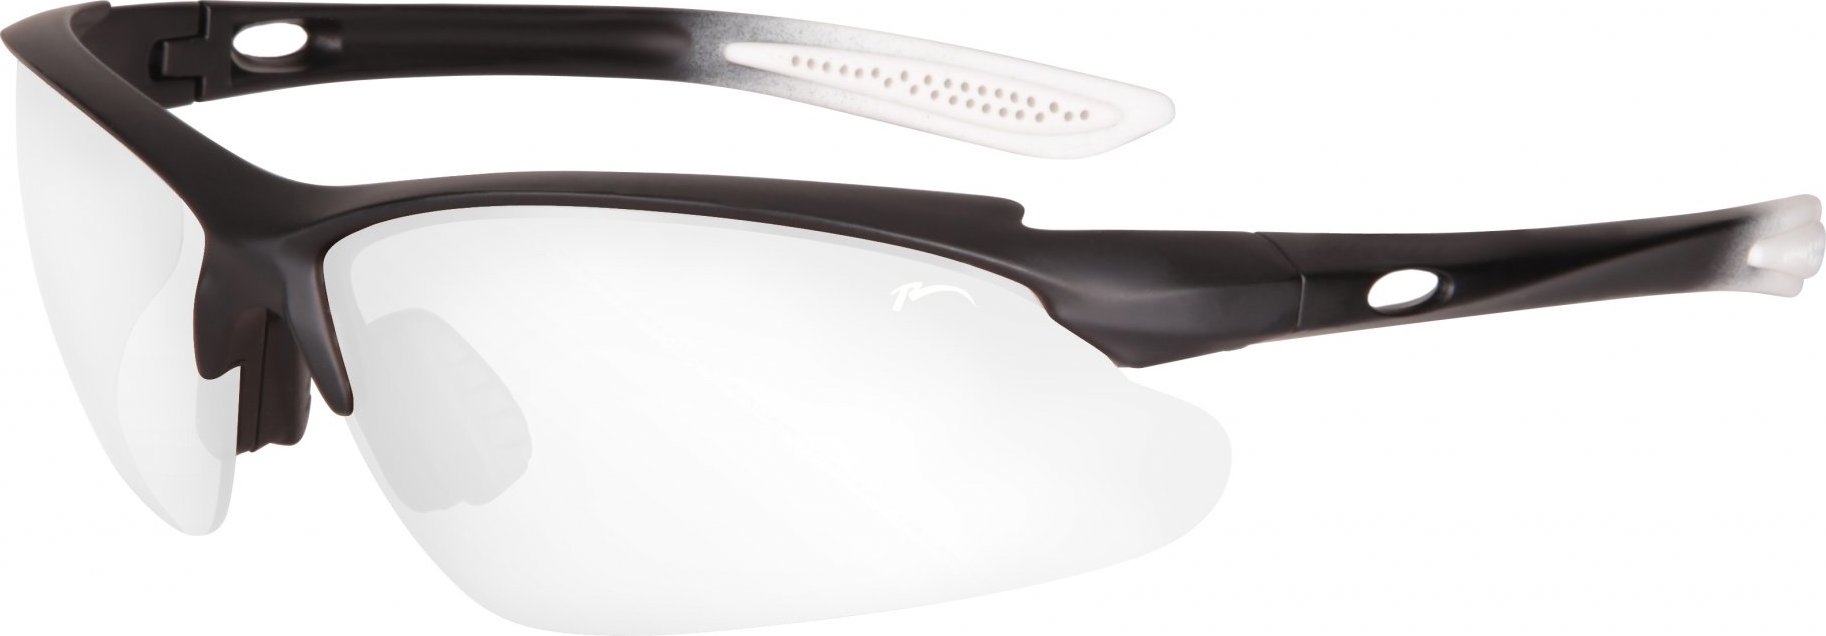 Sportovní sluneční brýle RELAX Mosera černá